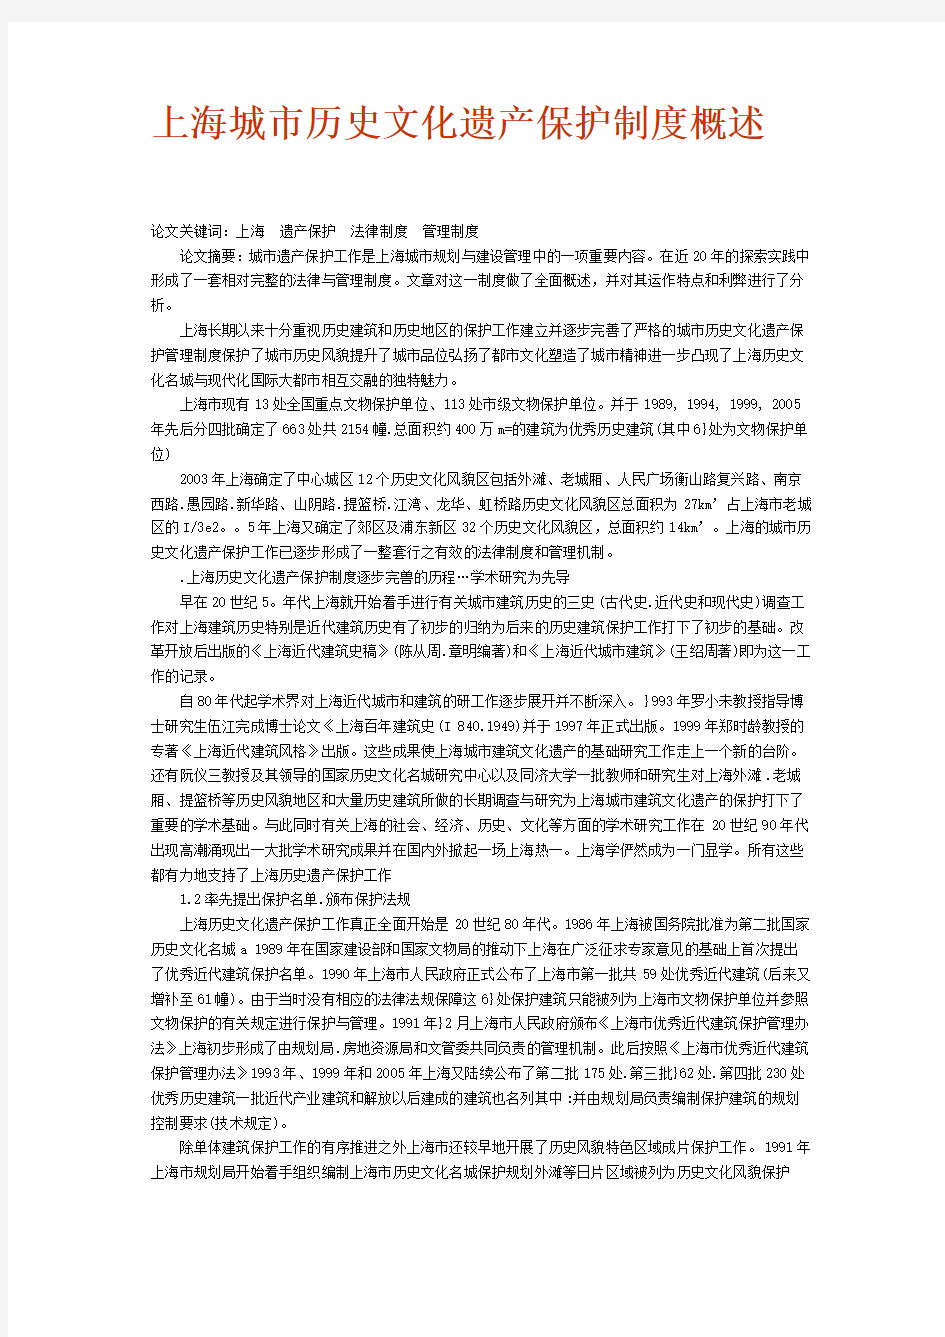 上海城市历史文化遗产保护制度概述